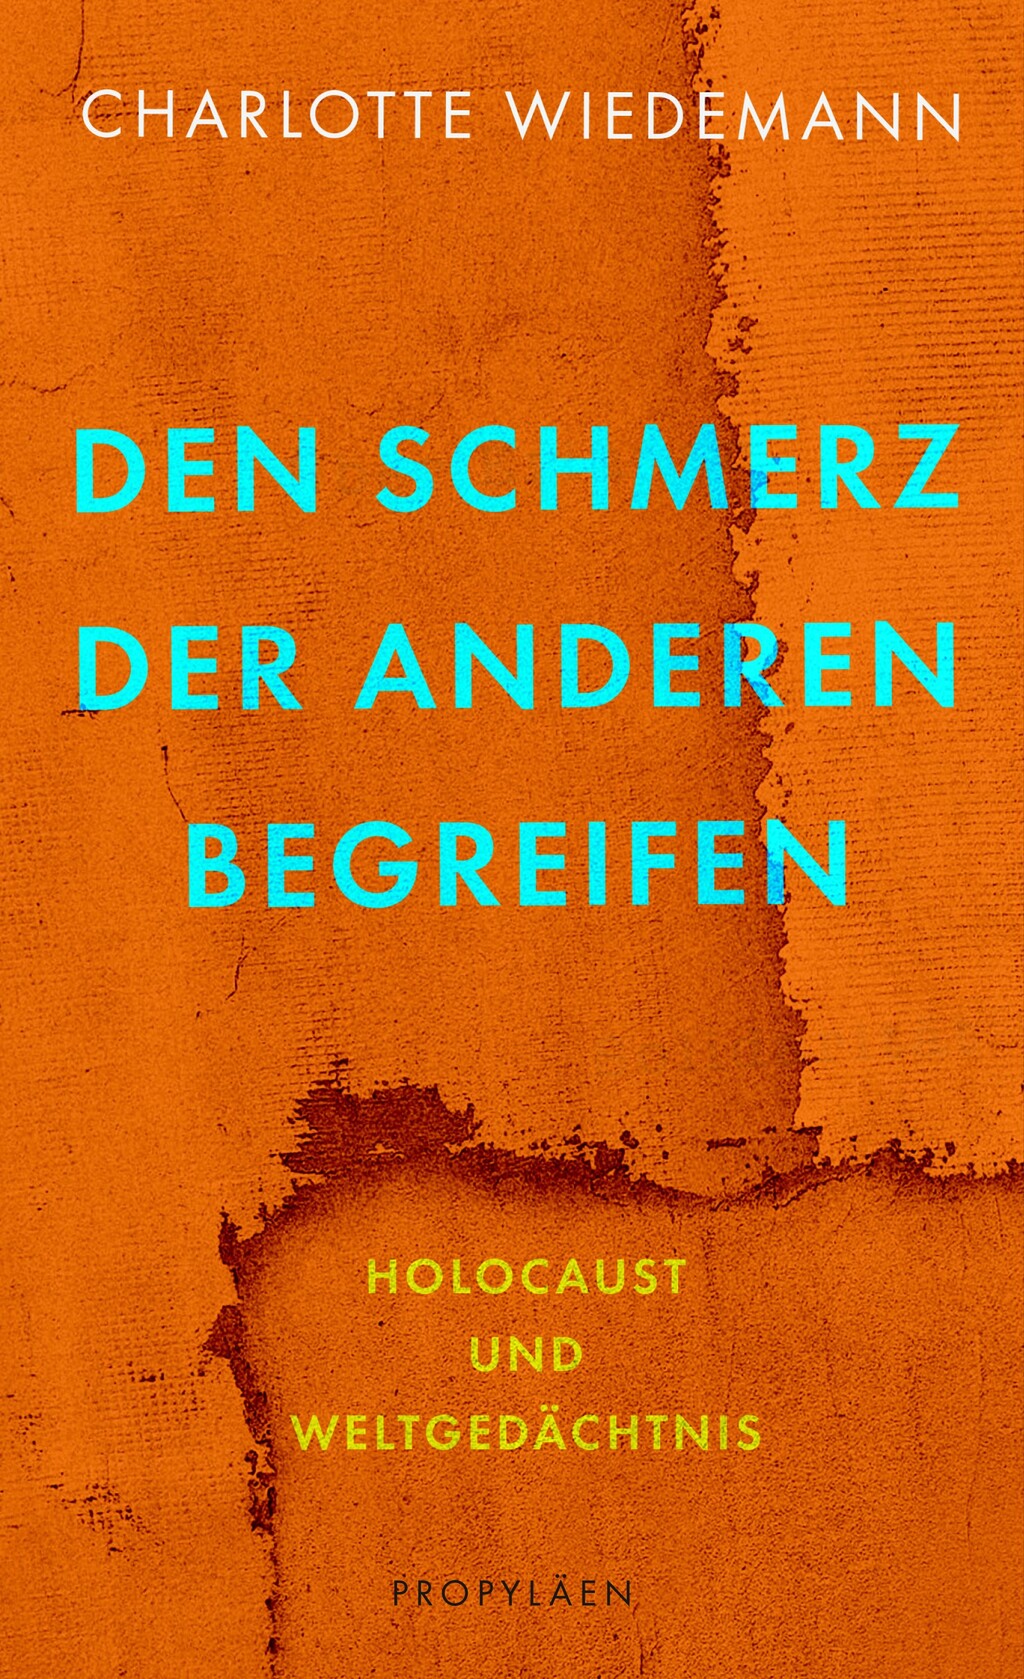 Cover of Charlotte Wiedemann's "Den Schmerz der Anderen begreifen", literally 'Understanding the pain of others', published in German by Propylaen (source: publisher)